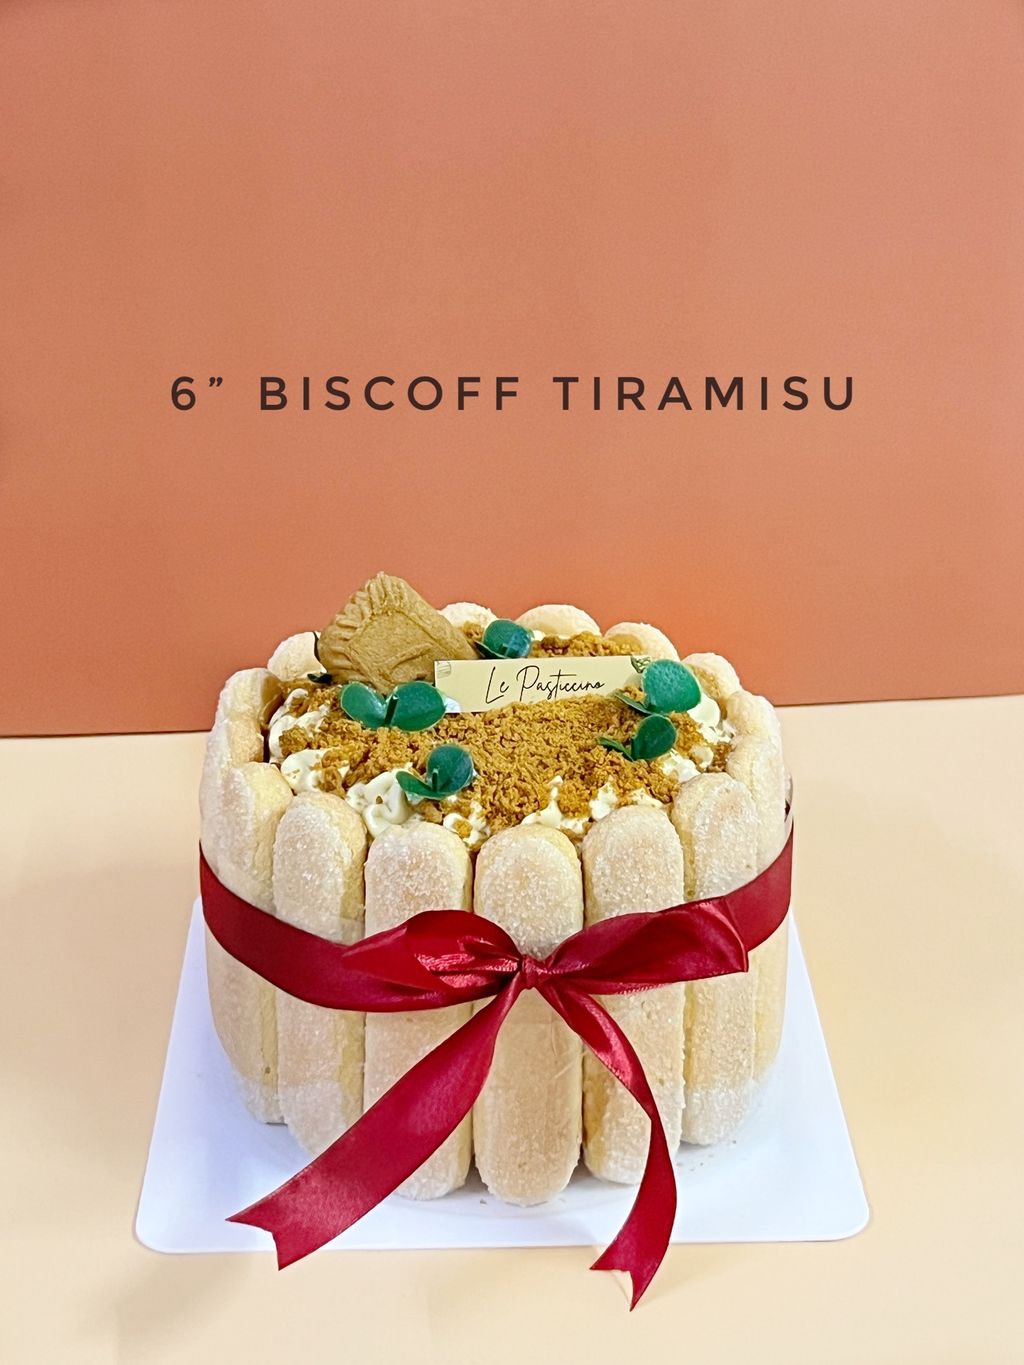 Biscoff Tiramisu